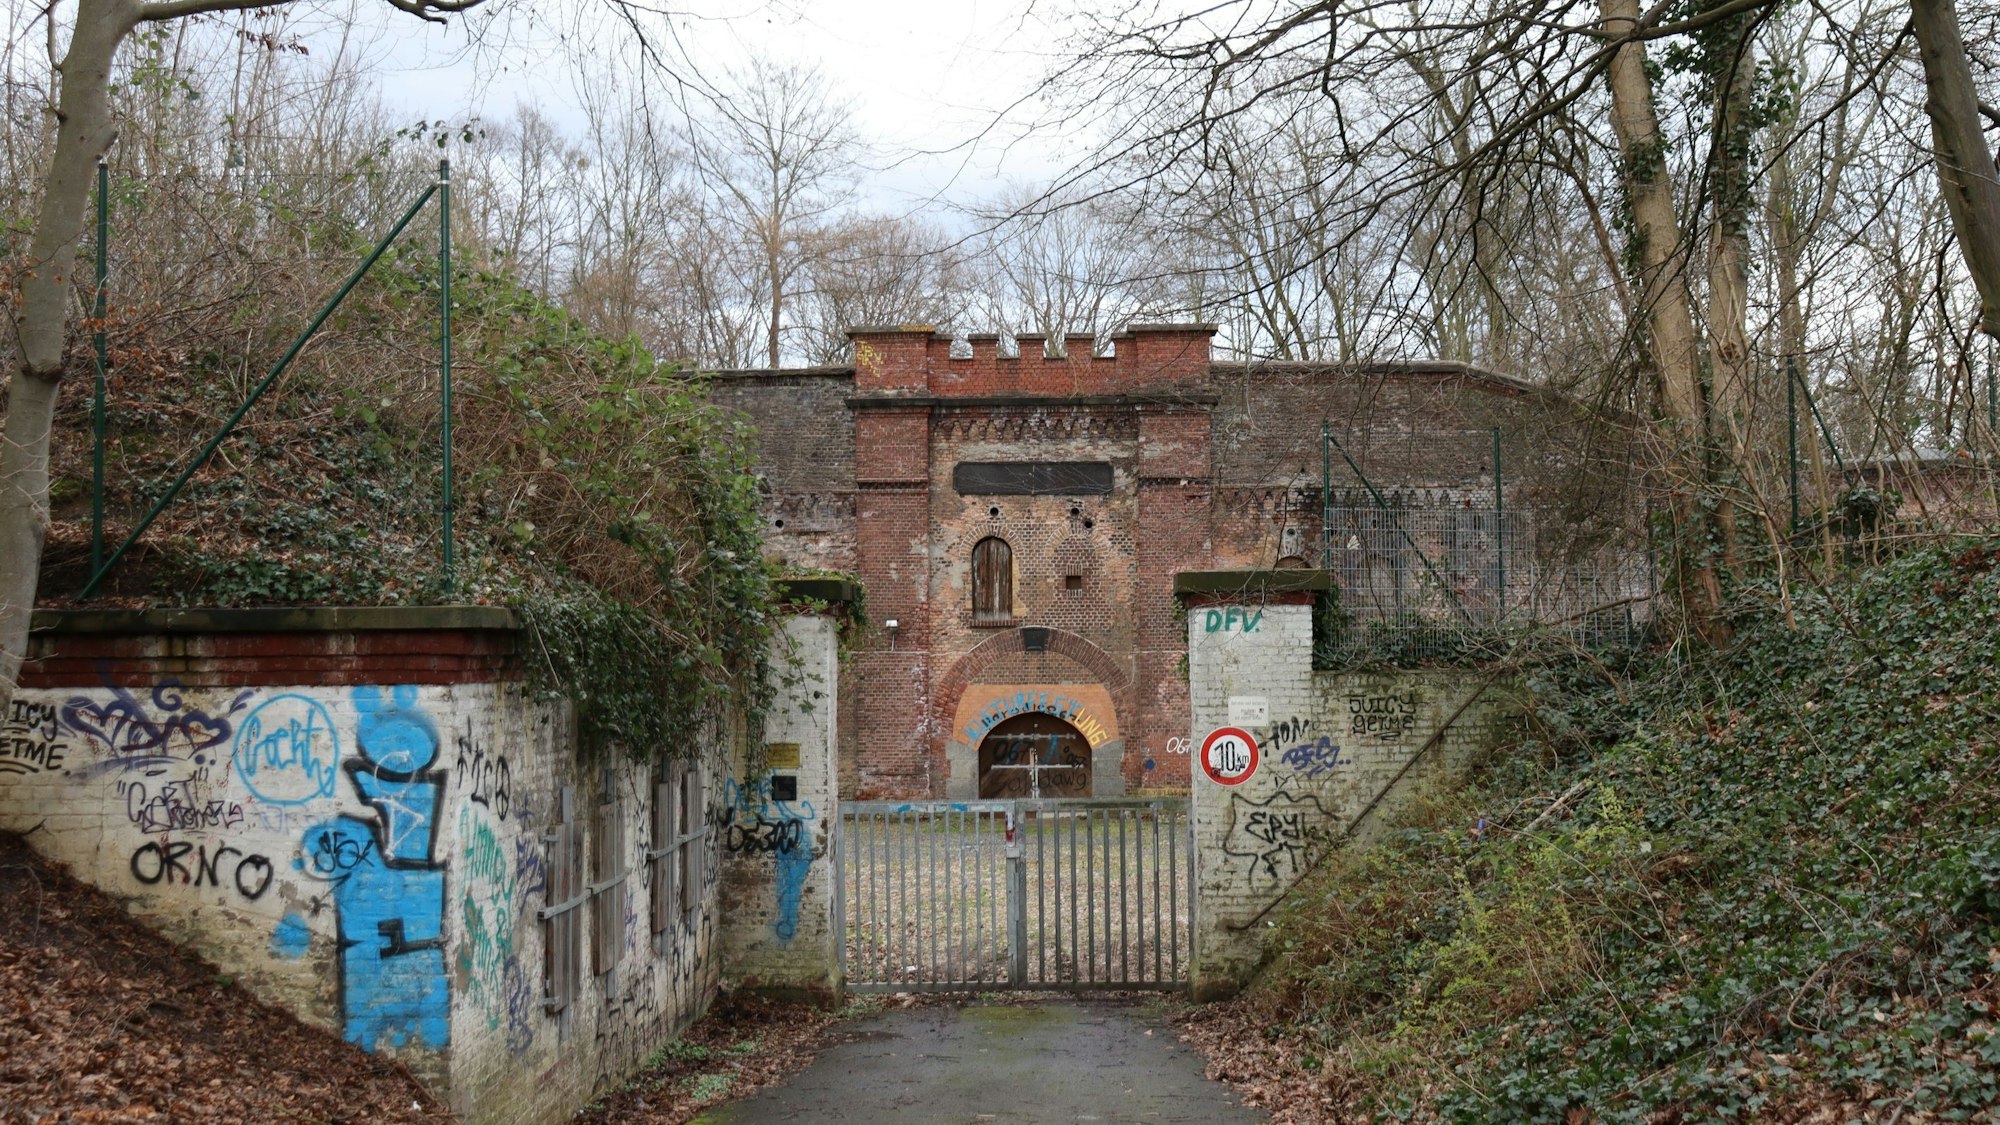 Blick auf eine Festungsanlage, die hinter einem verschlossenen Tor umgeben von Bäumen und Büschen liegt